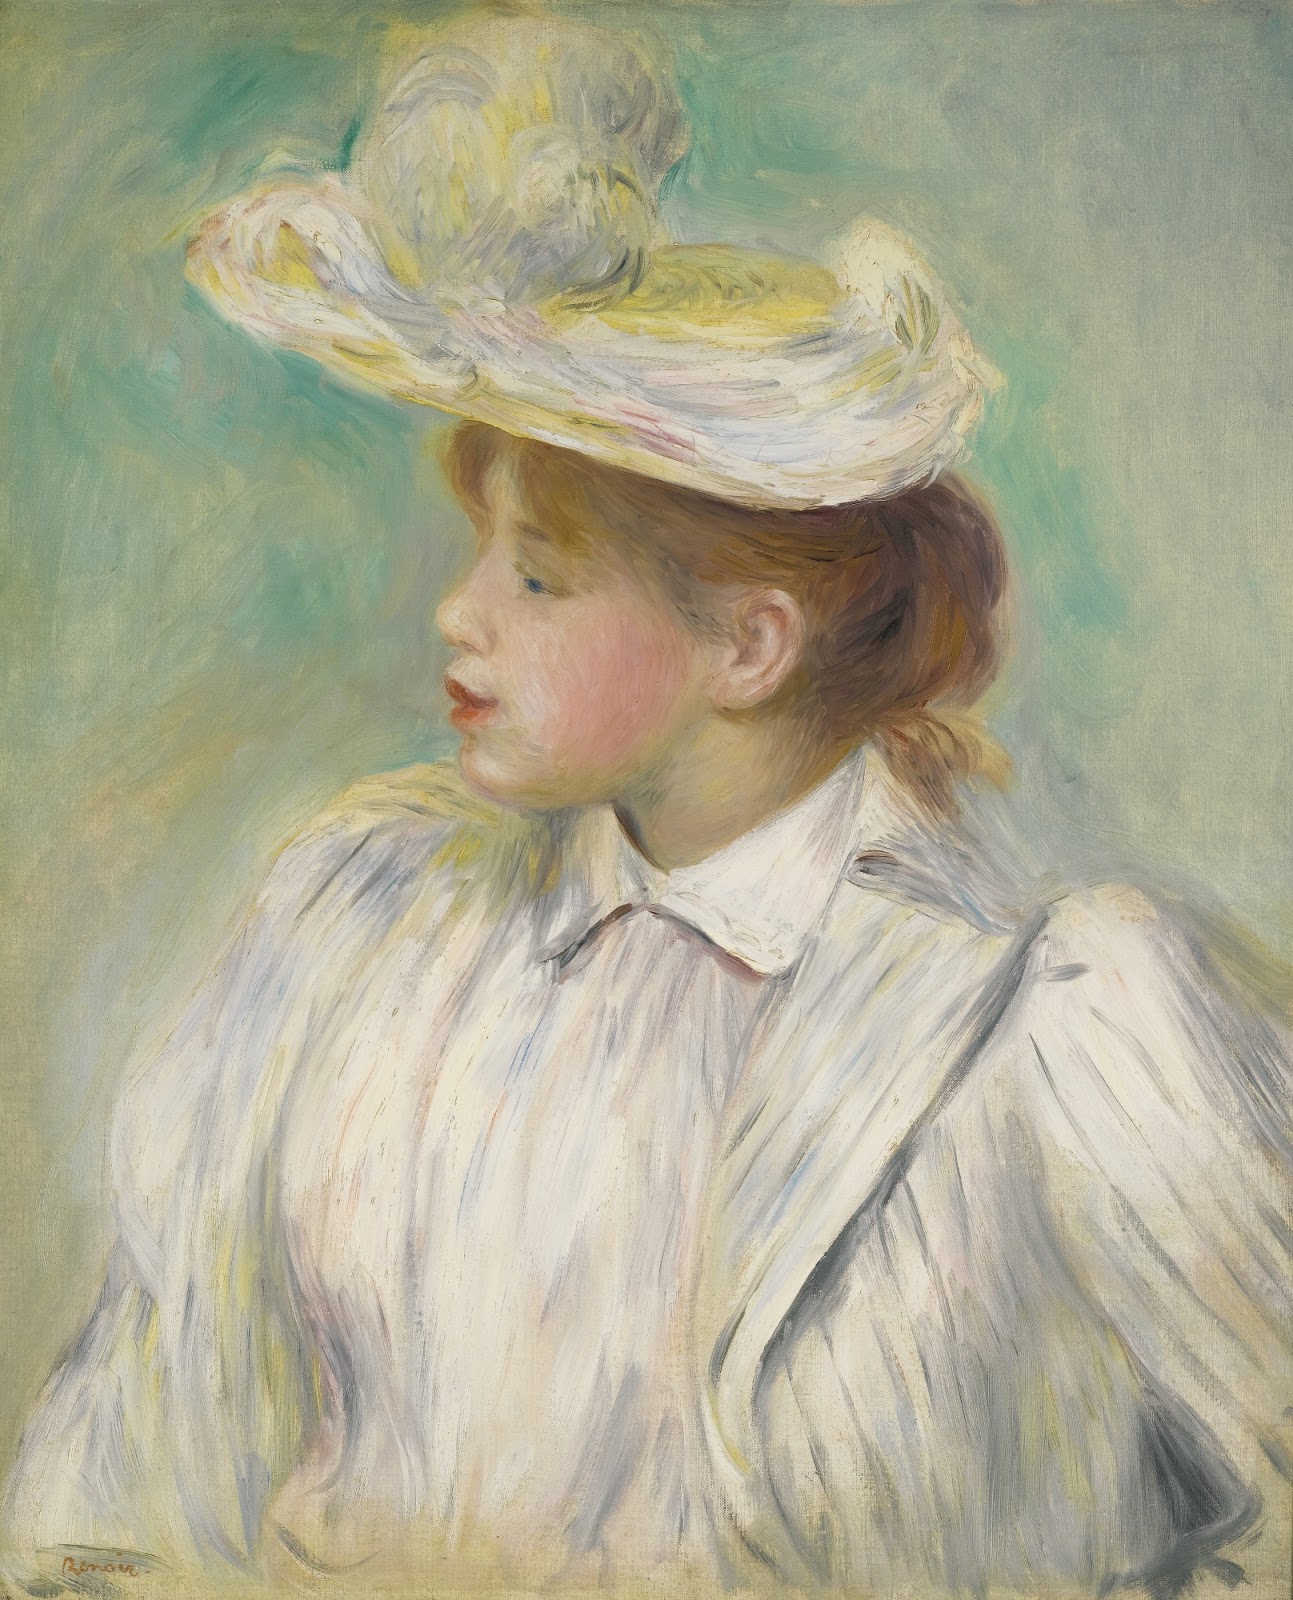 Pierre+Auguste+Renoir-1841-1-19 (898).jpg